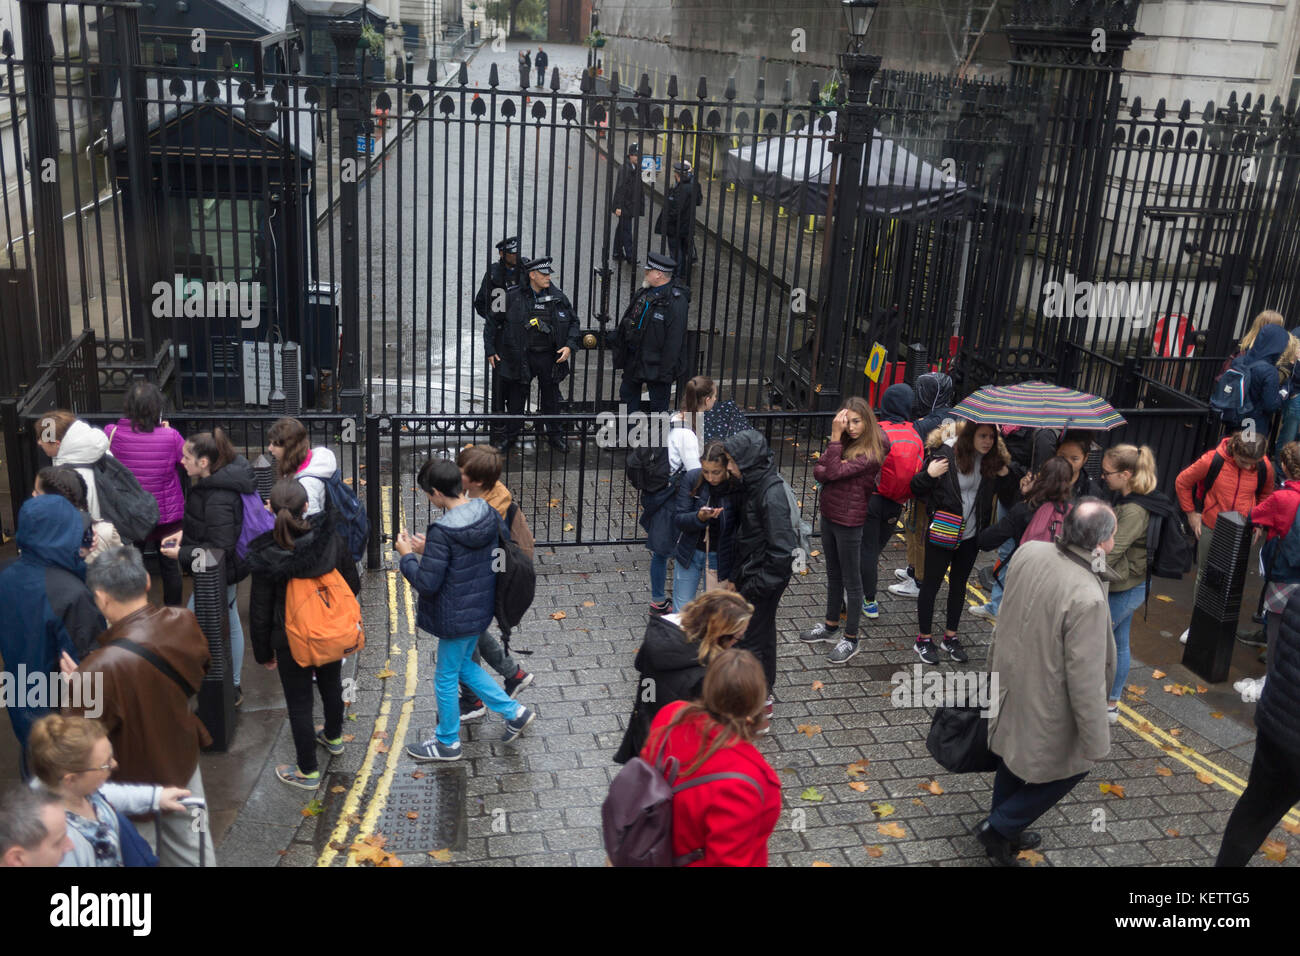 Bewaffnete Polizei Wache vor den Toren von Downing Street, die offizielle Residenz und Büros des britischen Premierministers Theresa May, am 19. Oktober 2017 in London, England. Stockfoto